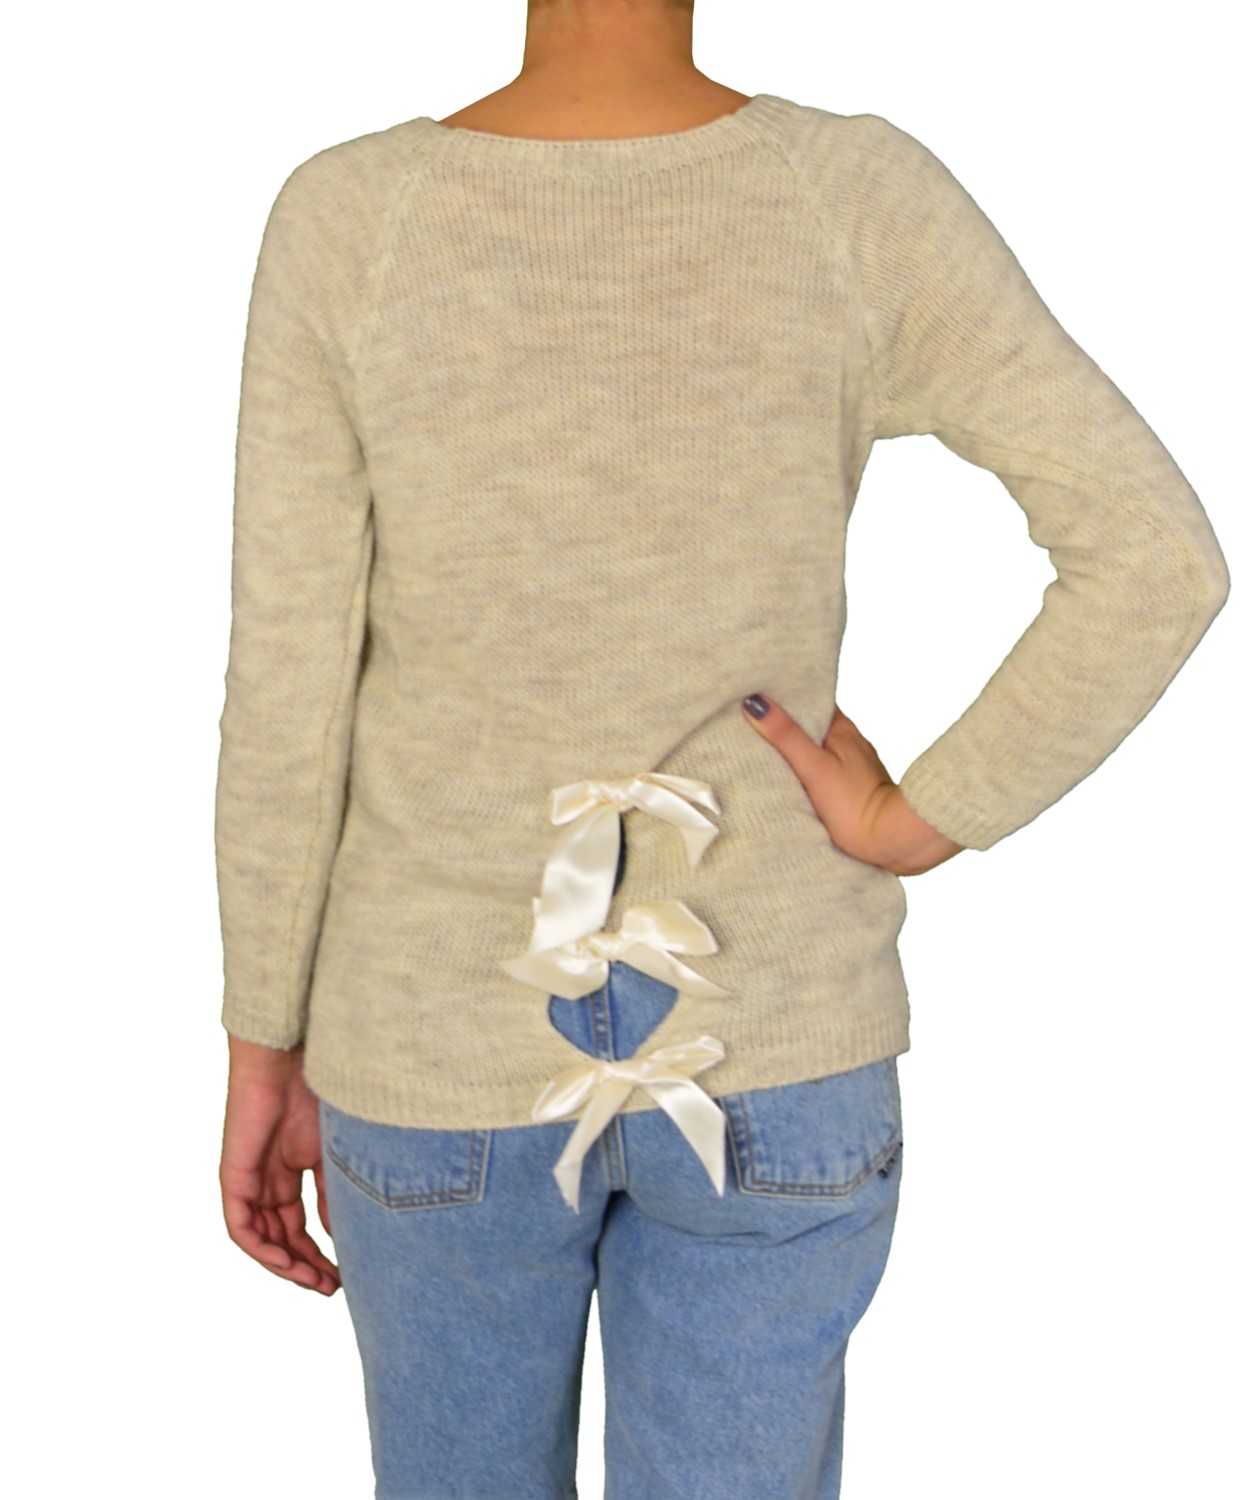 Γυναικεία πλεκτή μπλούζα μπεζ με σατέν φιογκάκια 7819C